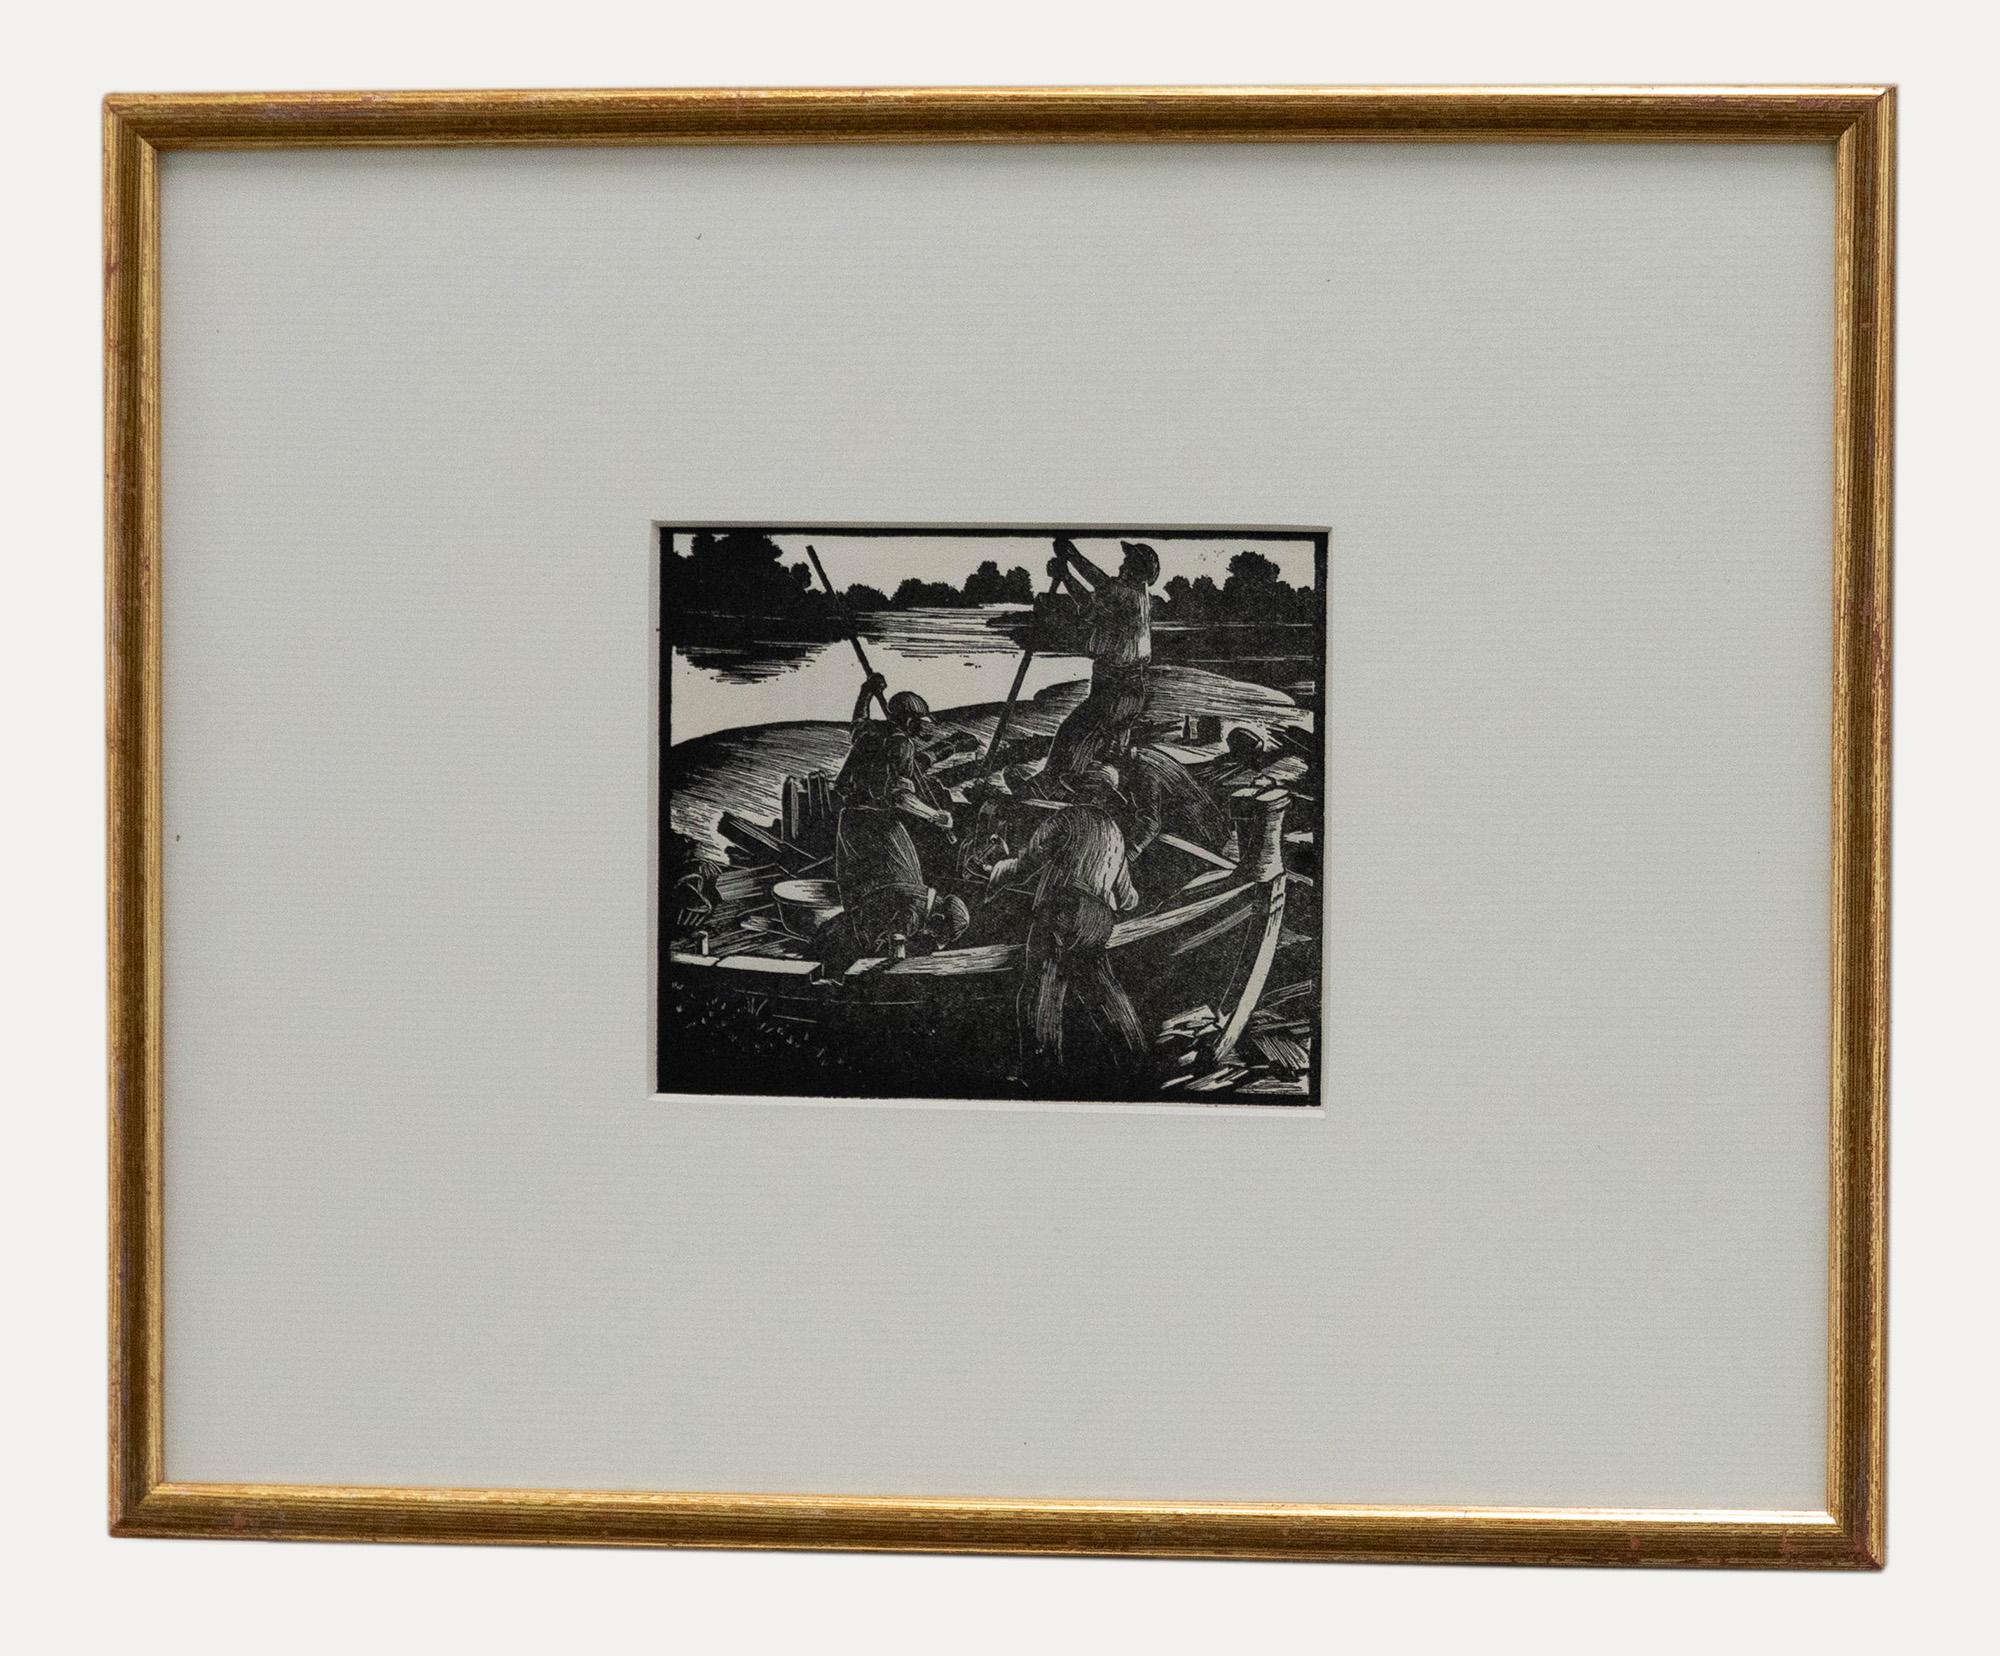 Une exquise gravure sur bois en noir et blanc de l'artiste anglais/américain de collection, Clare Leighton (1898-1989). Présenté dans un beau cadre à effet doré. Non signée. Sur le papier. 